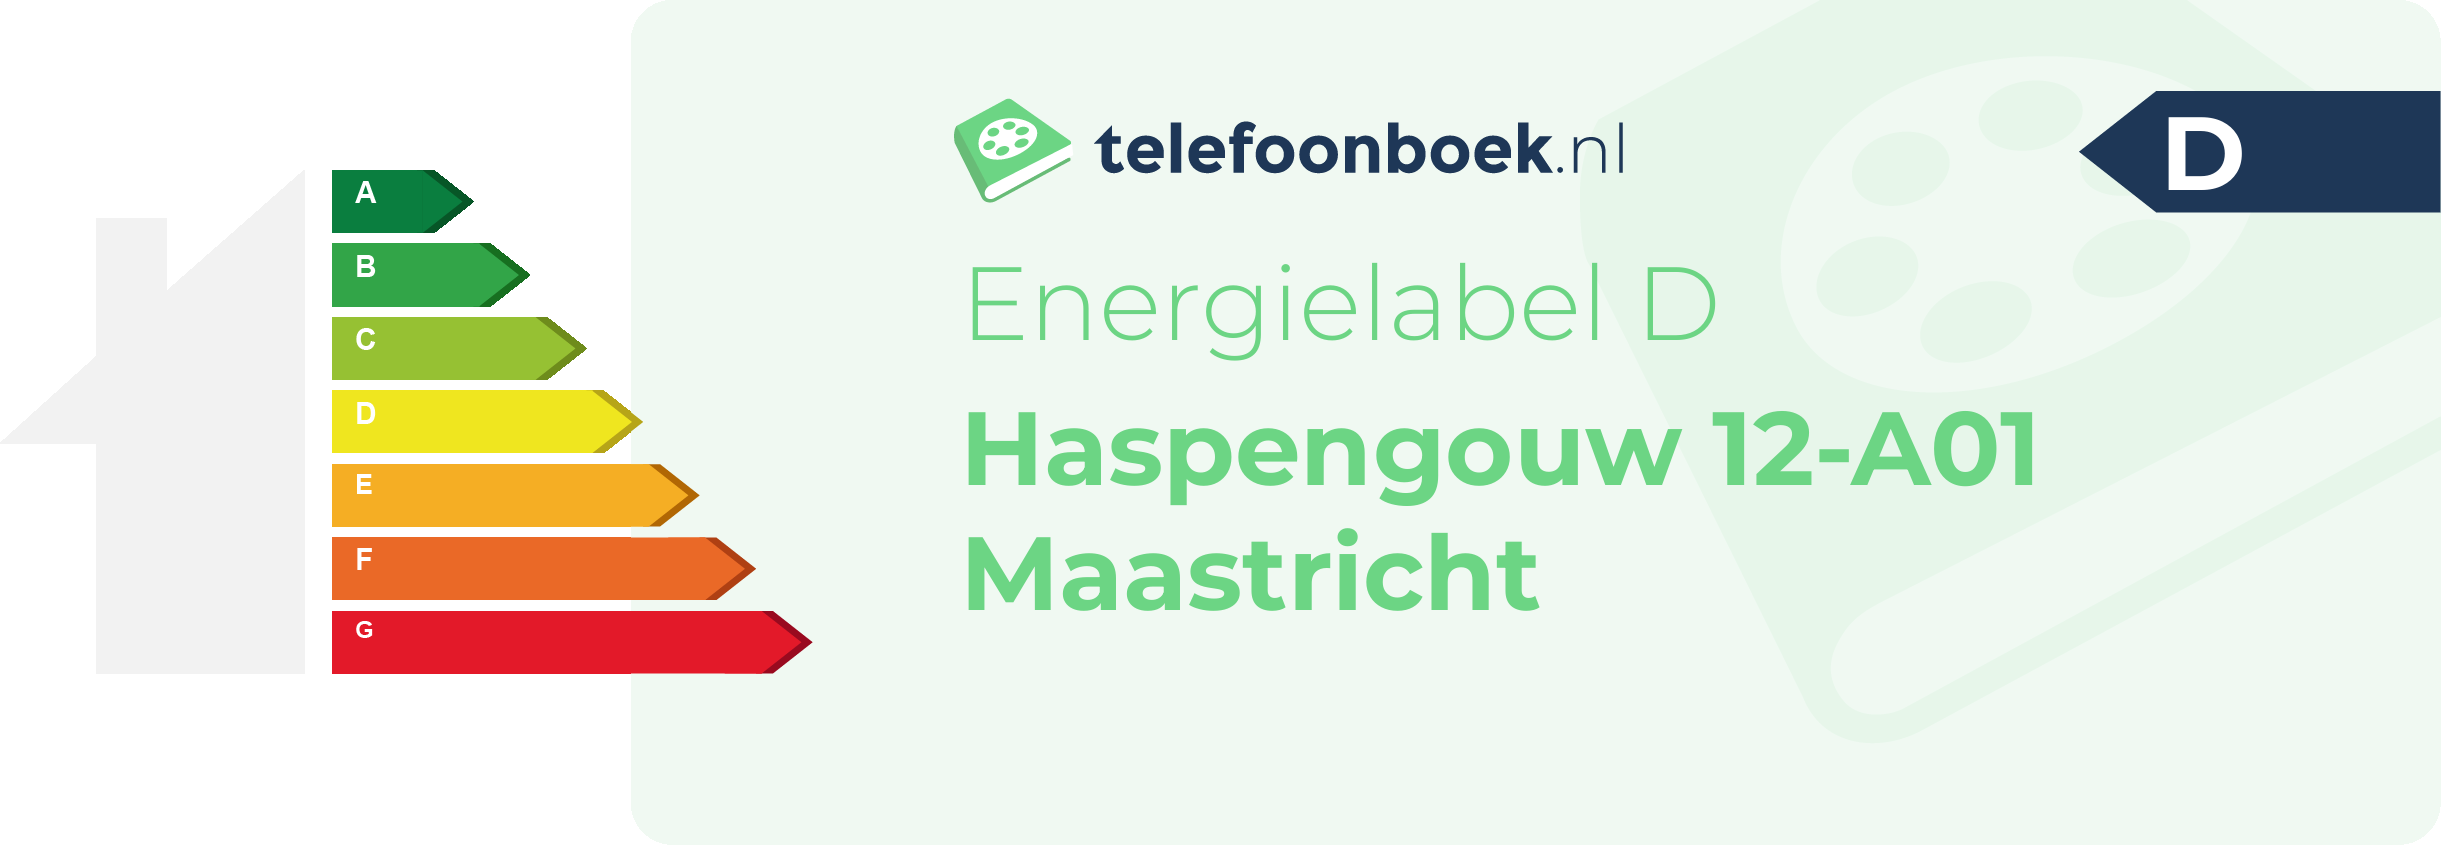 Energielabel Haspengouw 12-A01 Maastricht